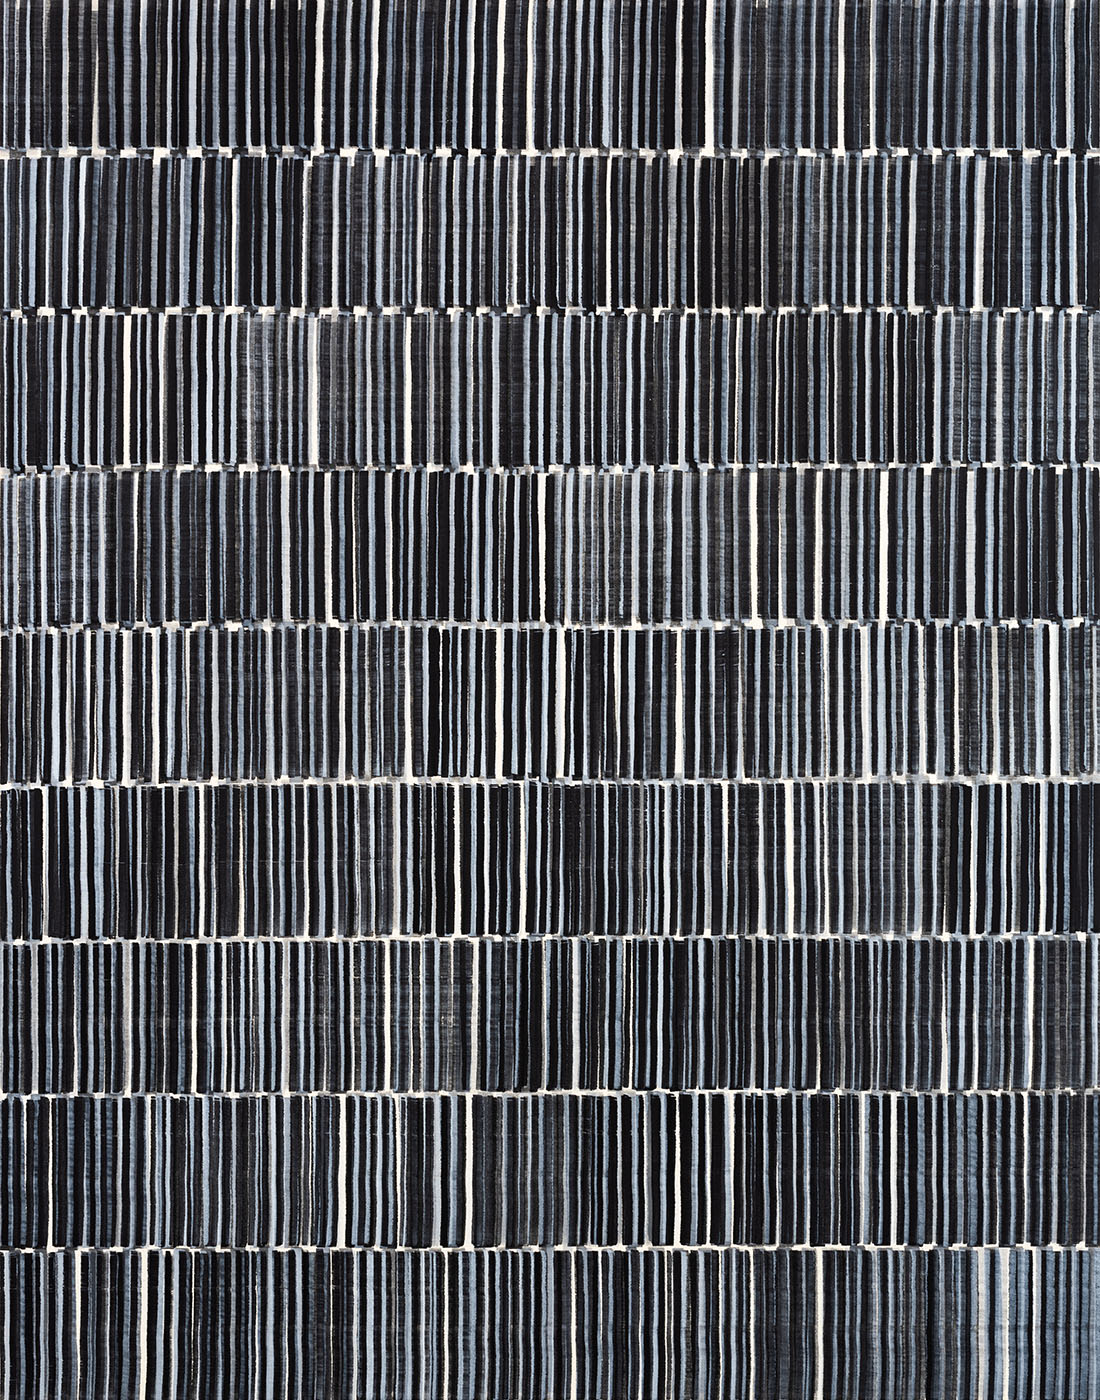 Nikola Dimitrov, Fuge V, 2021, Pigmente, Bindemittel auf Leinwand, 140 × 110 cm